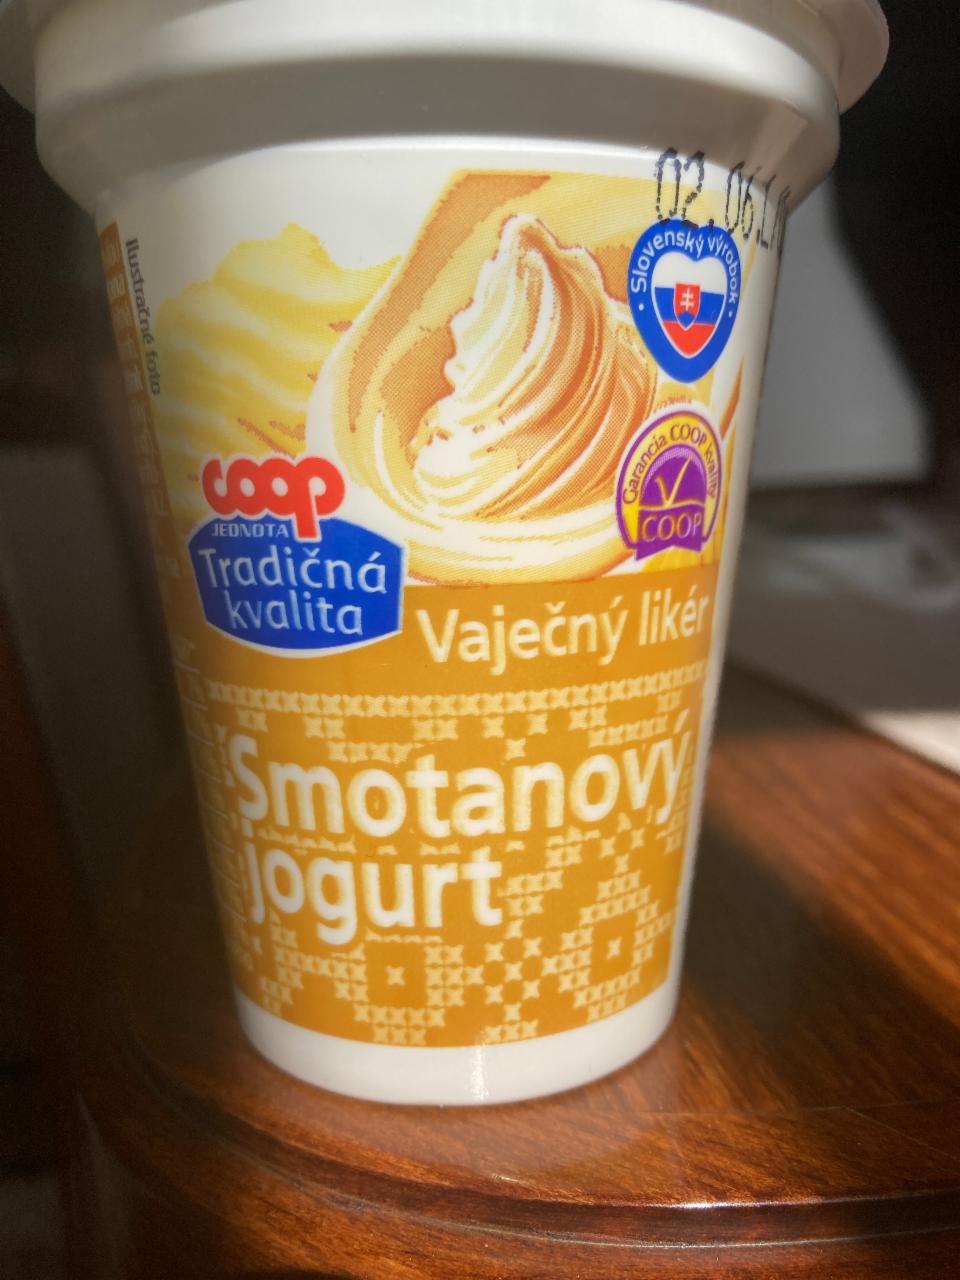 Fotografie - Smotanový jogurt Vaječný likér Coop Tradičná kvalita